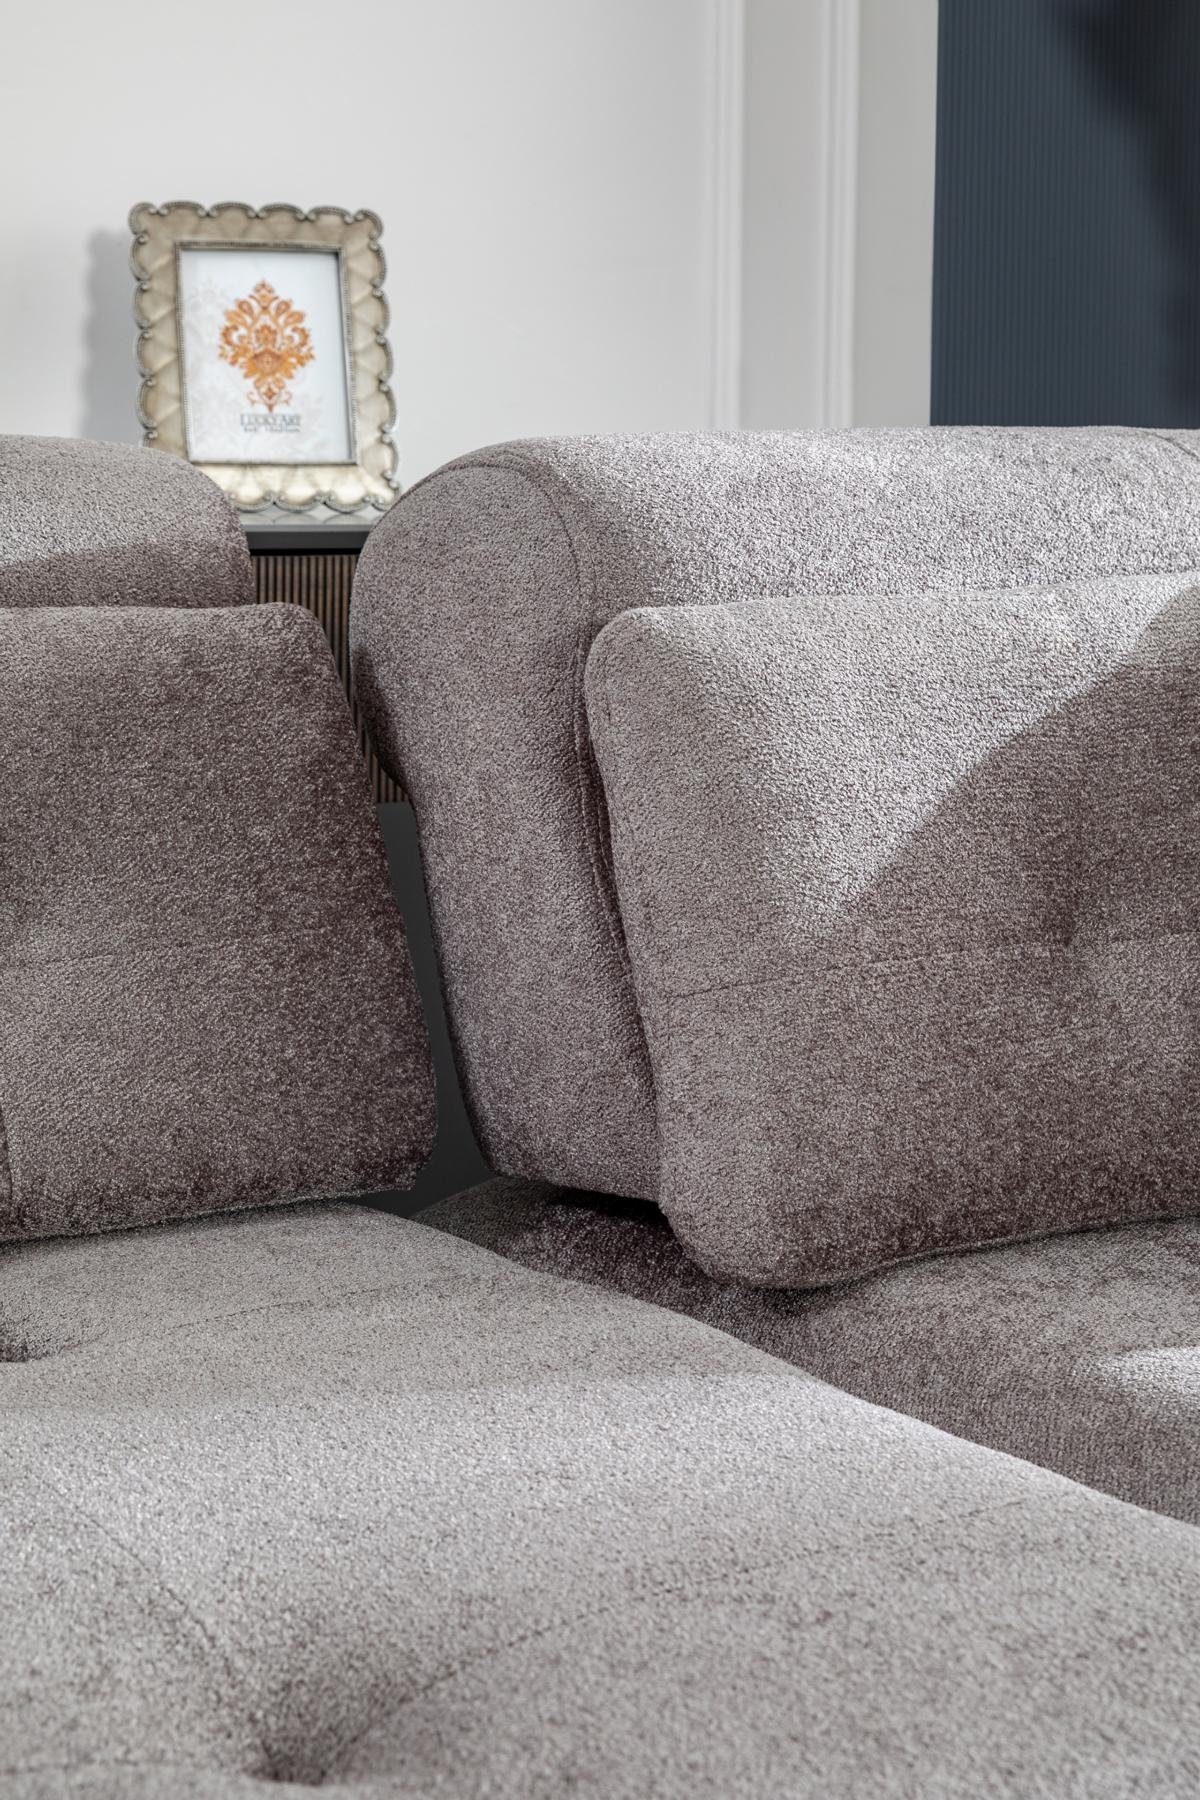 JVmoebel Sofa in Made Italienische Wohnzimmer Stil Europe Luxus Sofa Design